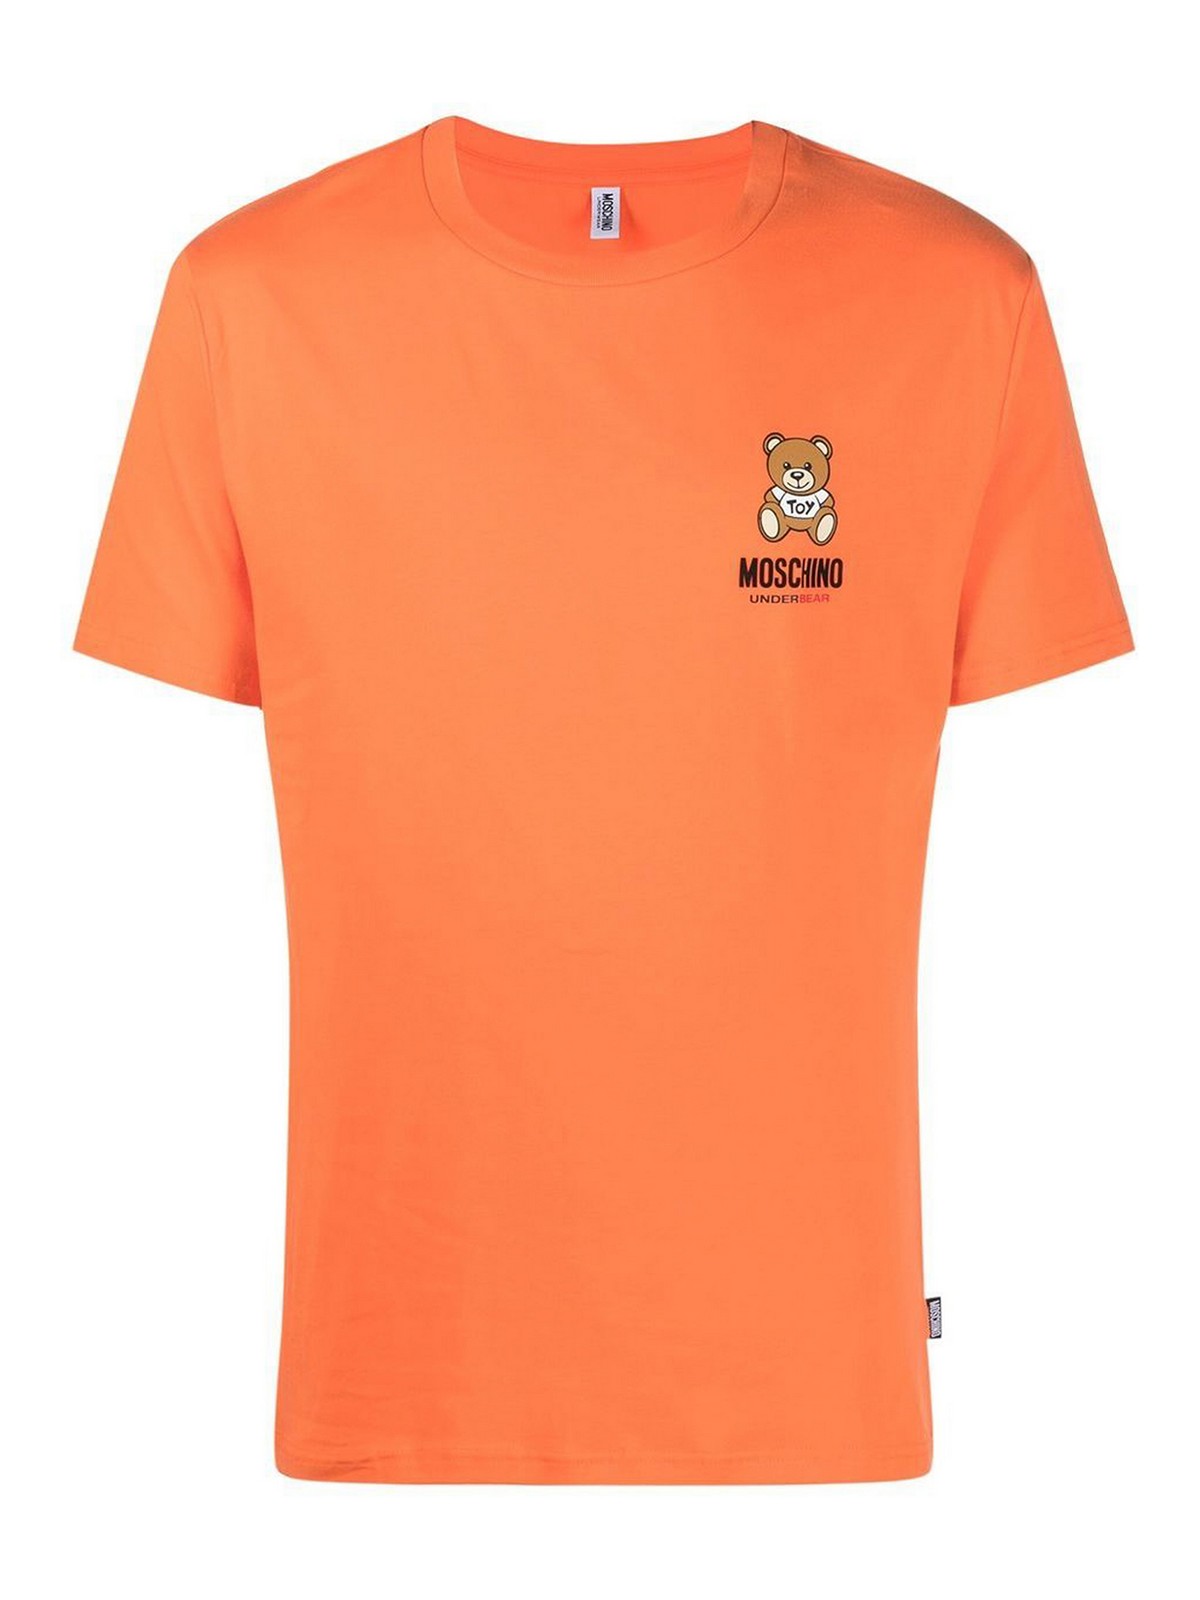 Tシャツ Moschino - Tシャツ - オレンジ - 078444100035